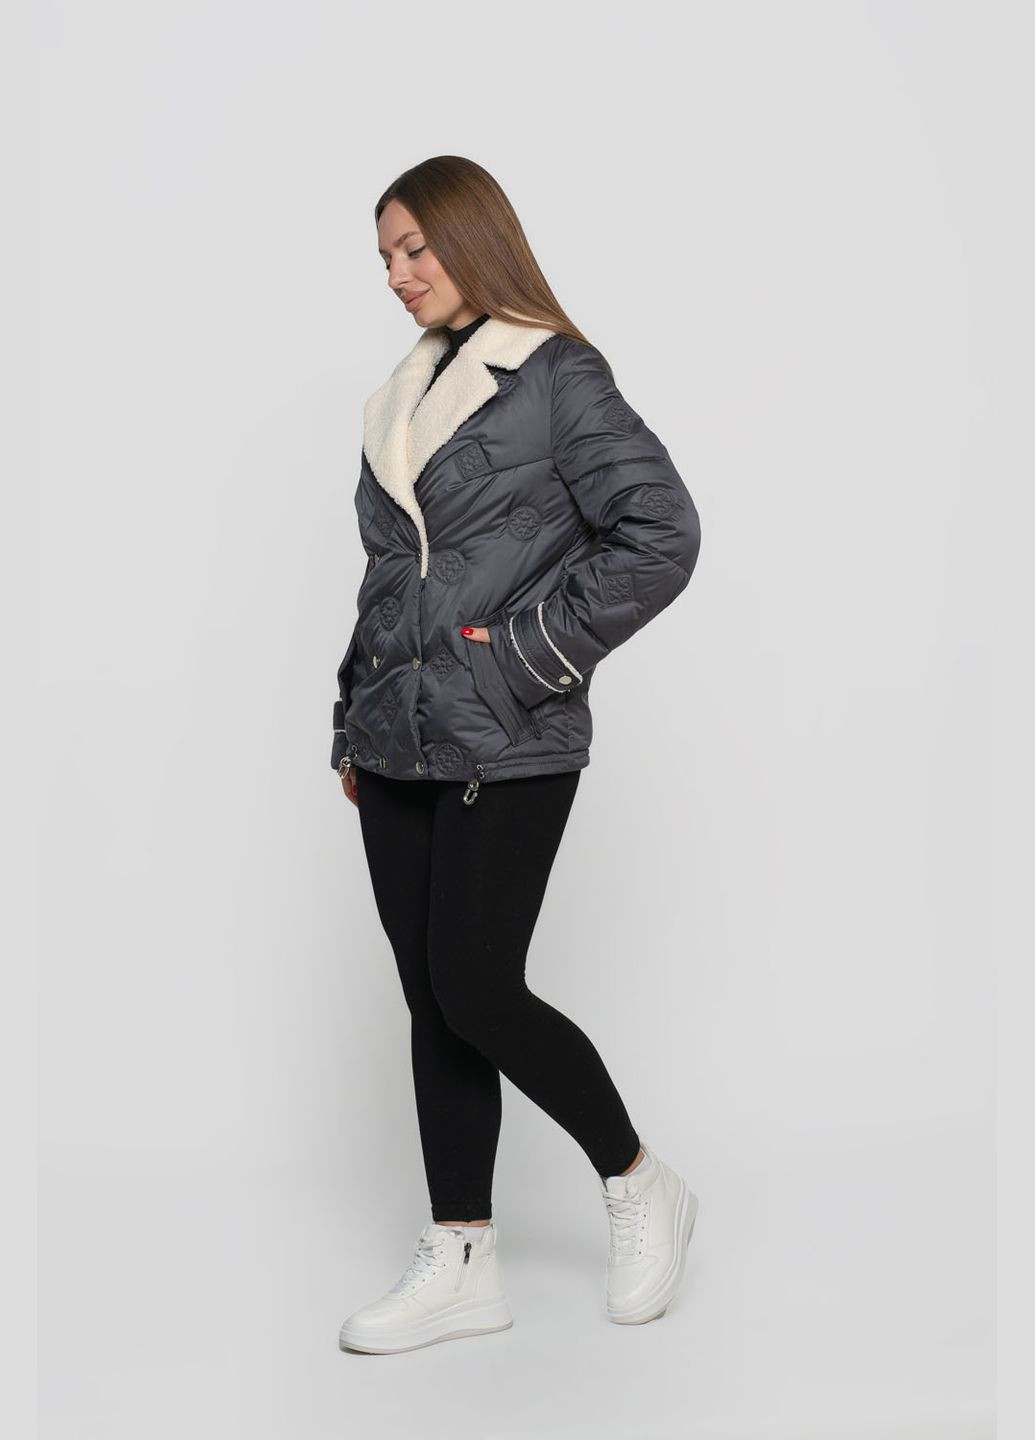 Графитовая демисезонная куртка женская короткая viton куртка-пиджак Vicco